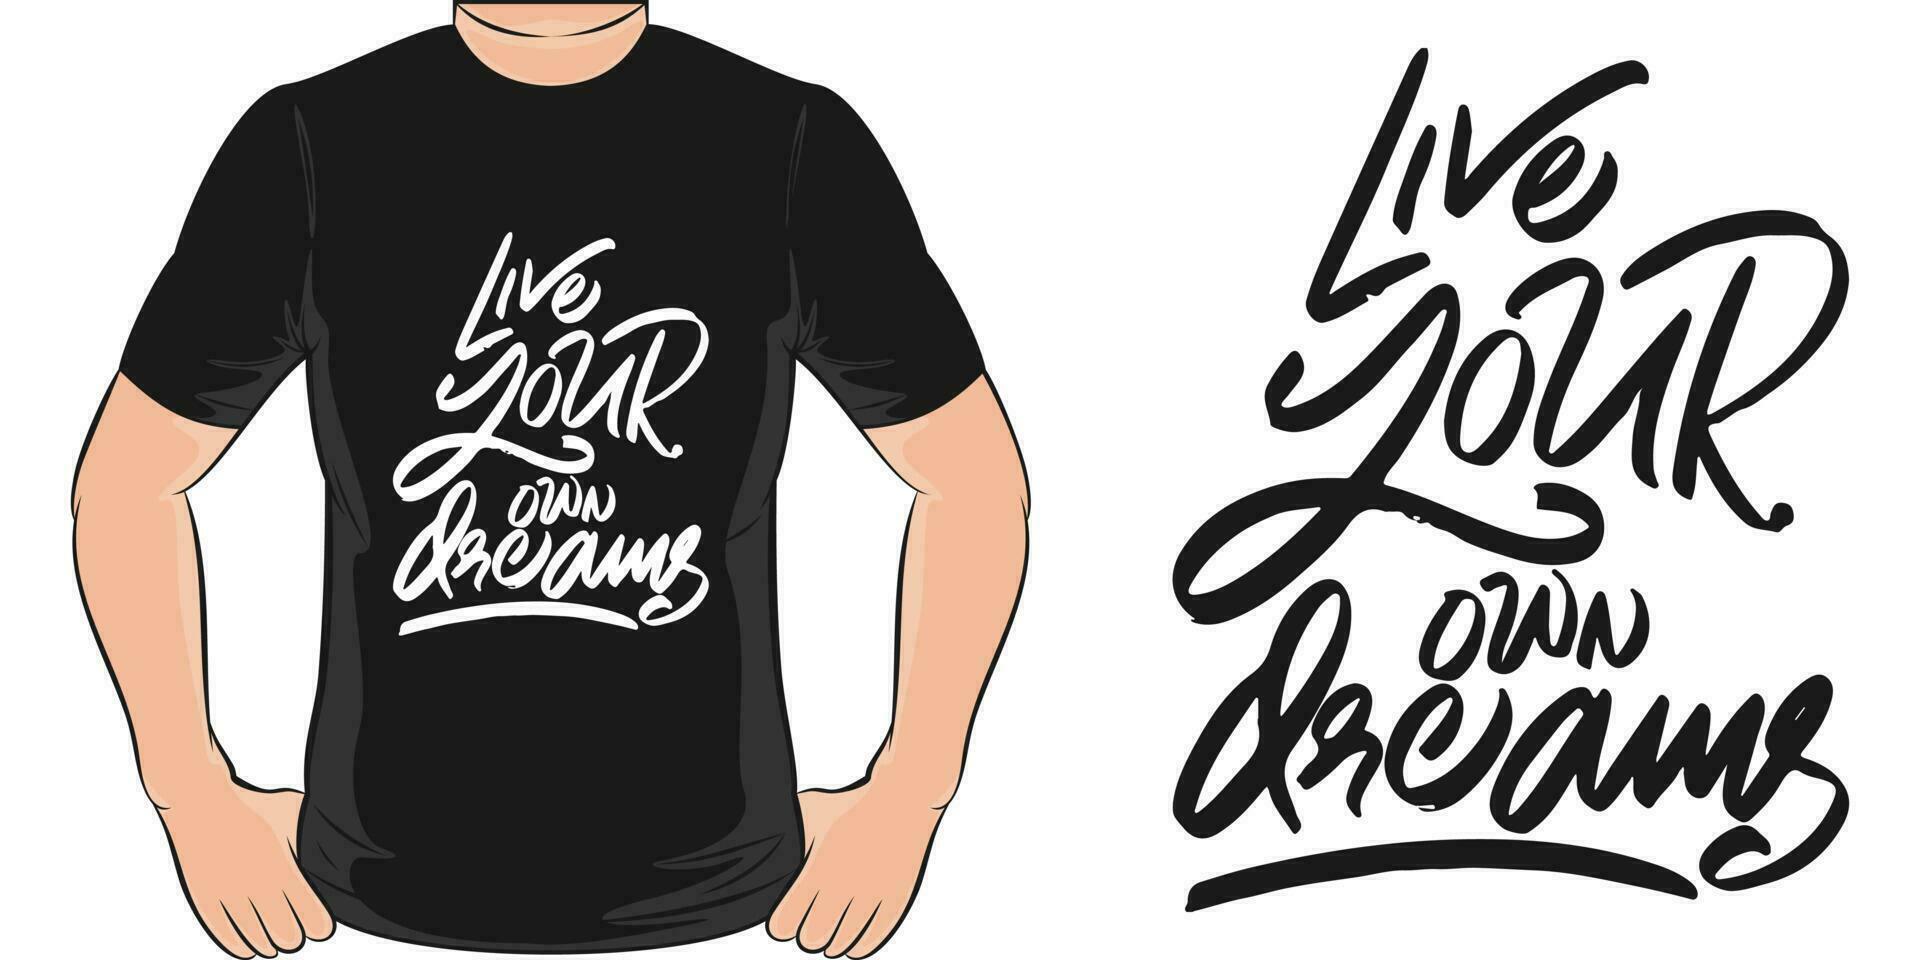 leven uw eigen dromen, motiverende citaat t-shirt ontwerp. vector